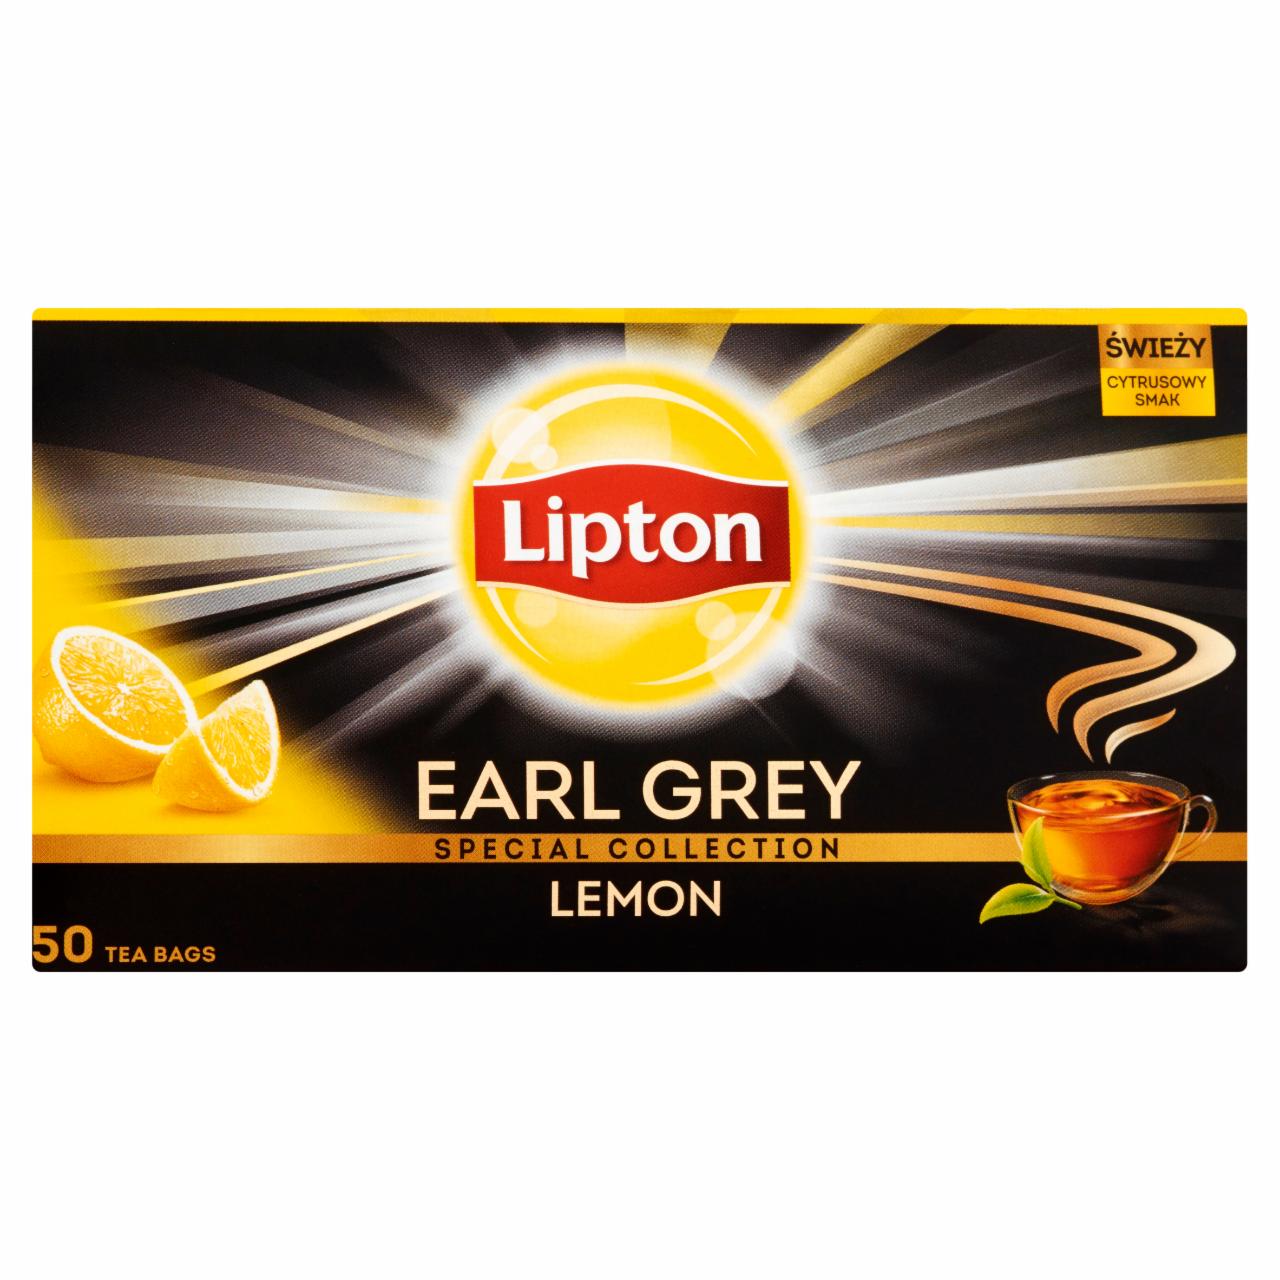 Zdjęcia - Lipton Earl Grey Lemon Herbata czarna 100 g (50 torebek)